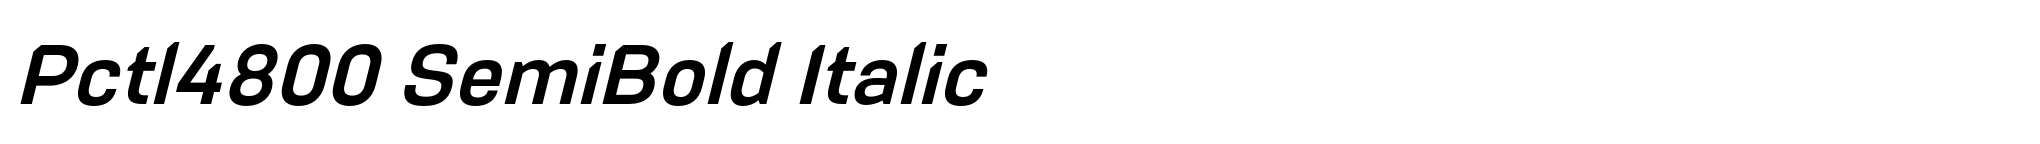 Pctl4800 SemiBold Italic image